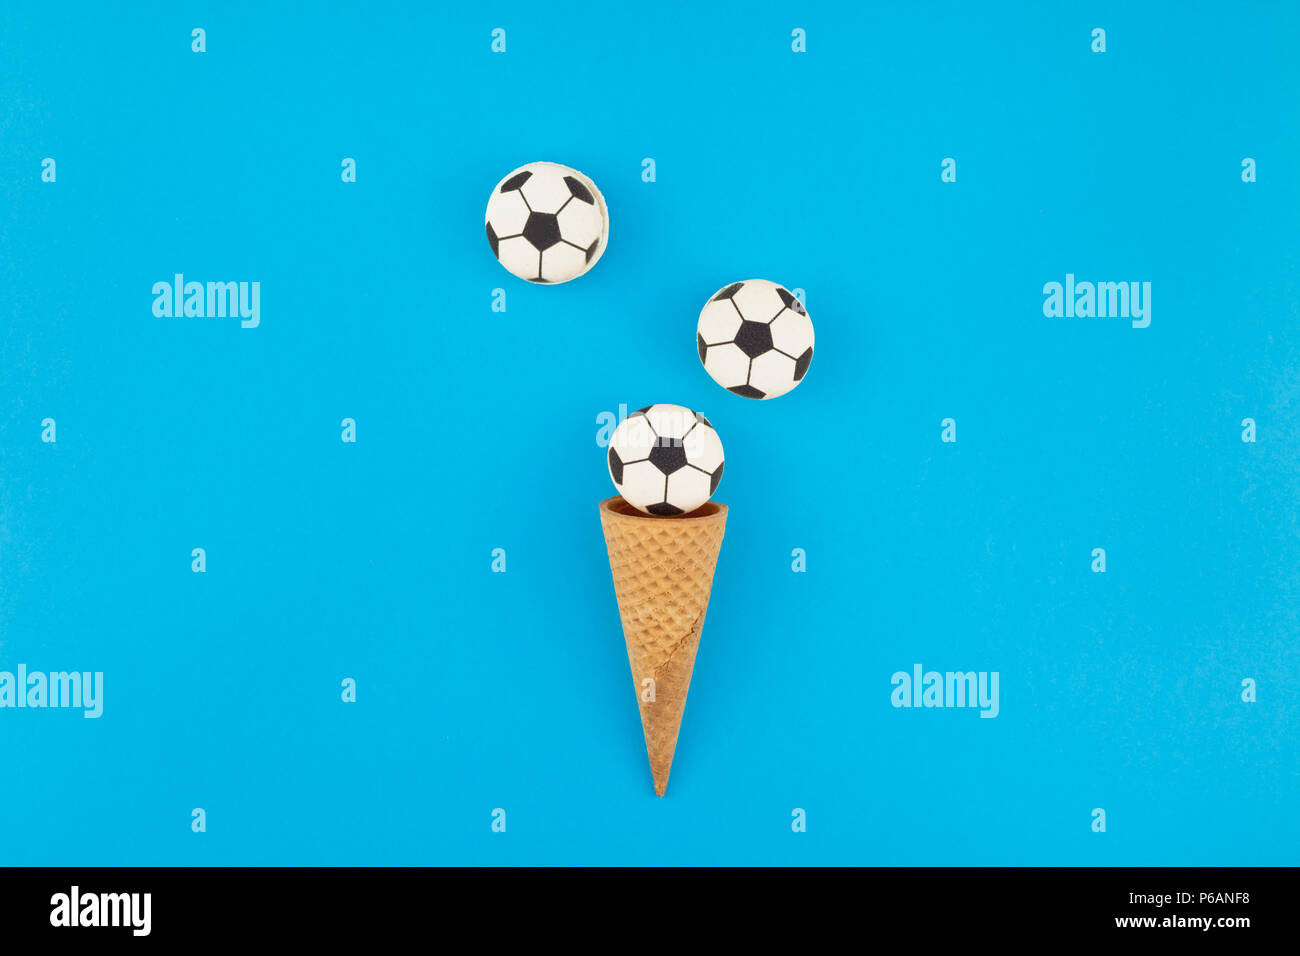 Télévision créative jeter Vue de dessus de la crème glacée cônes alvéolés avec des ballons de foot macarons sur fond bleu clair bold avec copie espace dans un style minimaliste, conce Banque D'Images